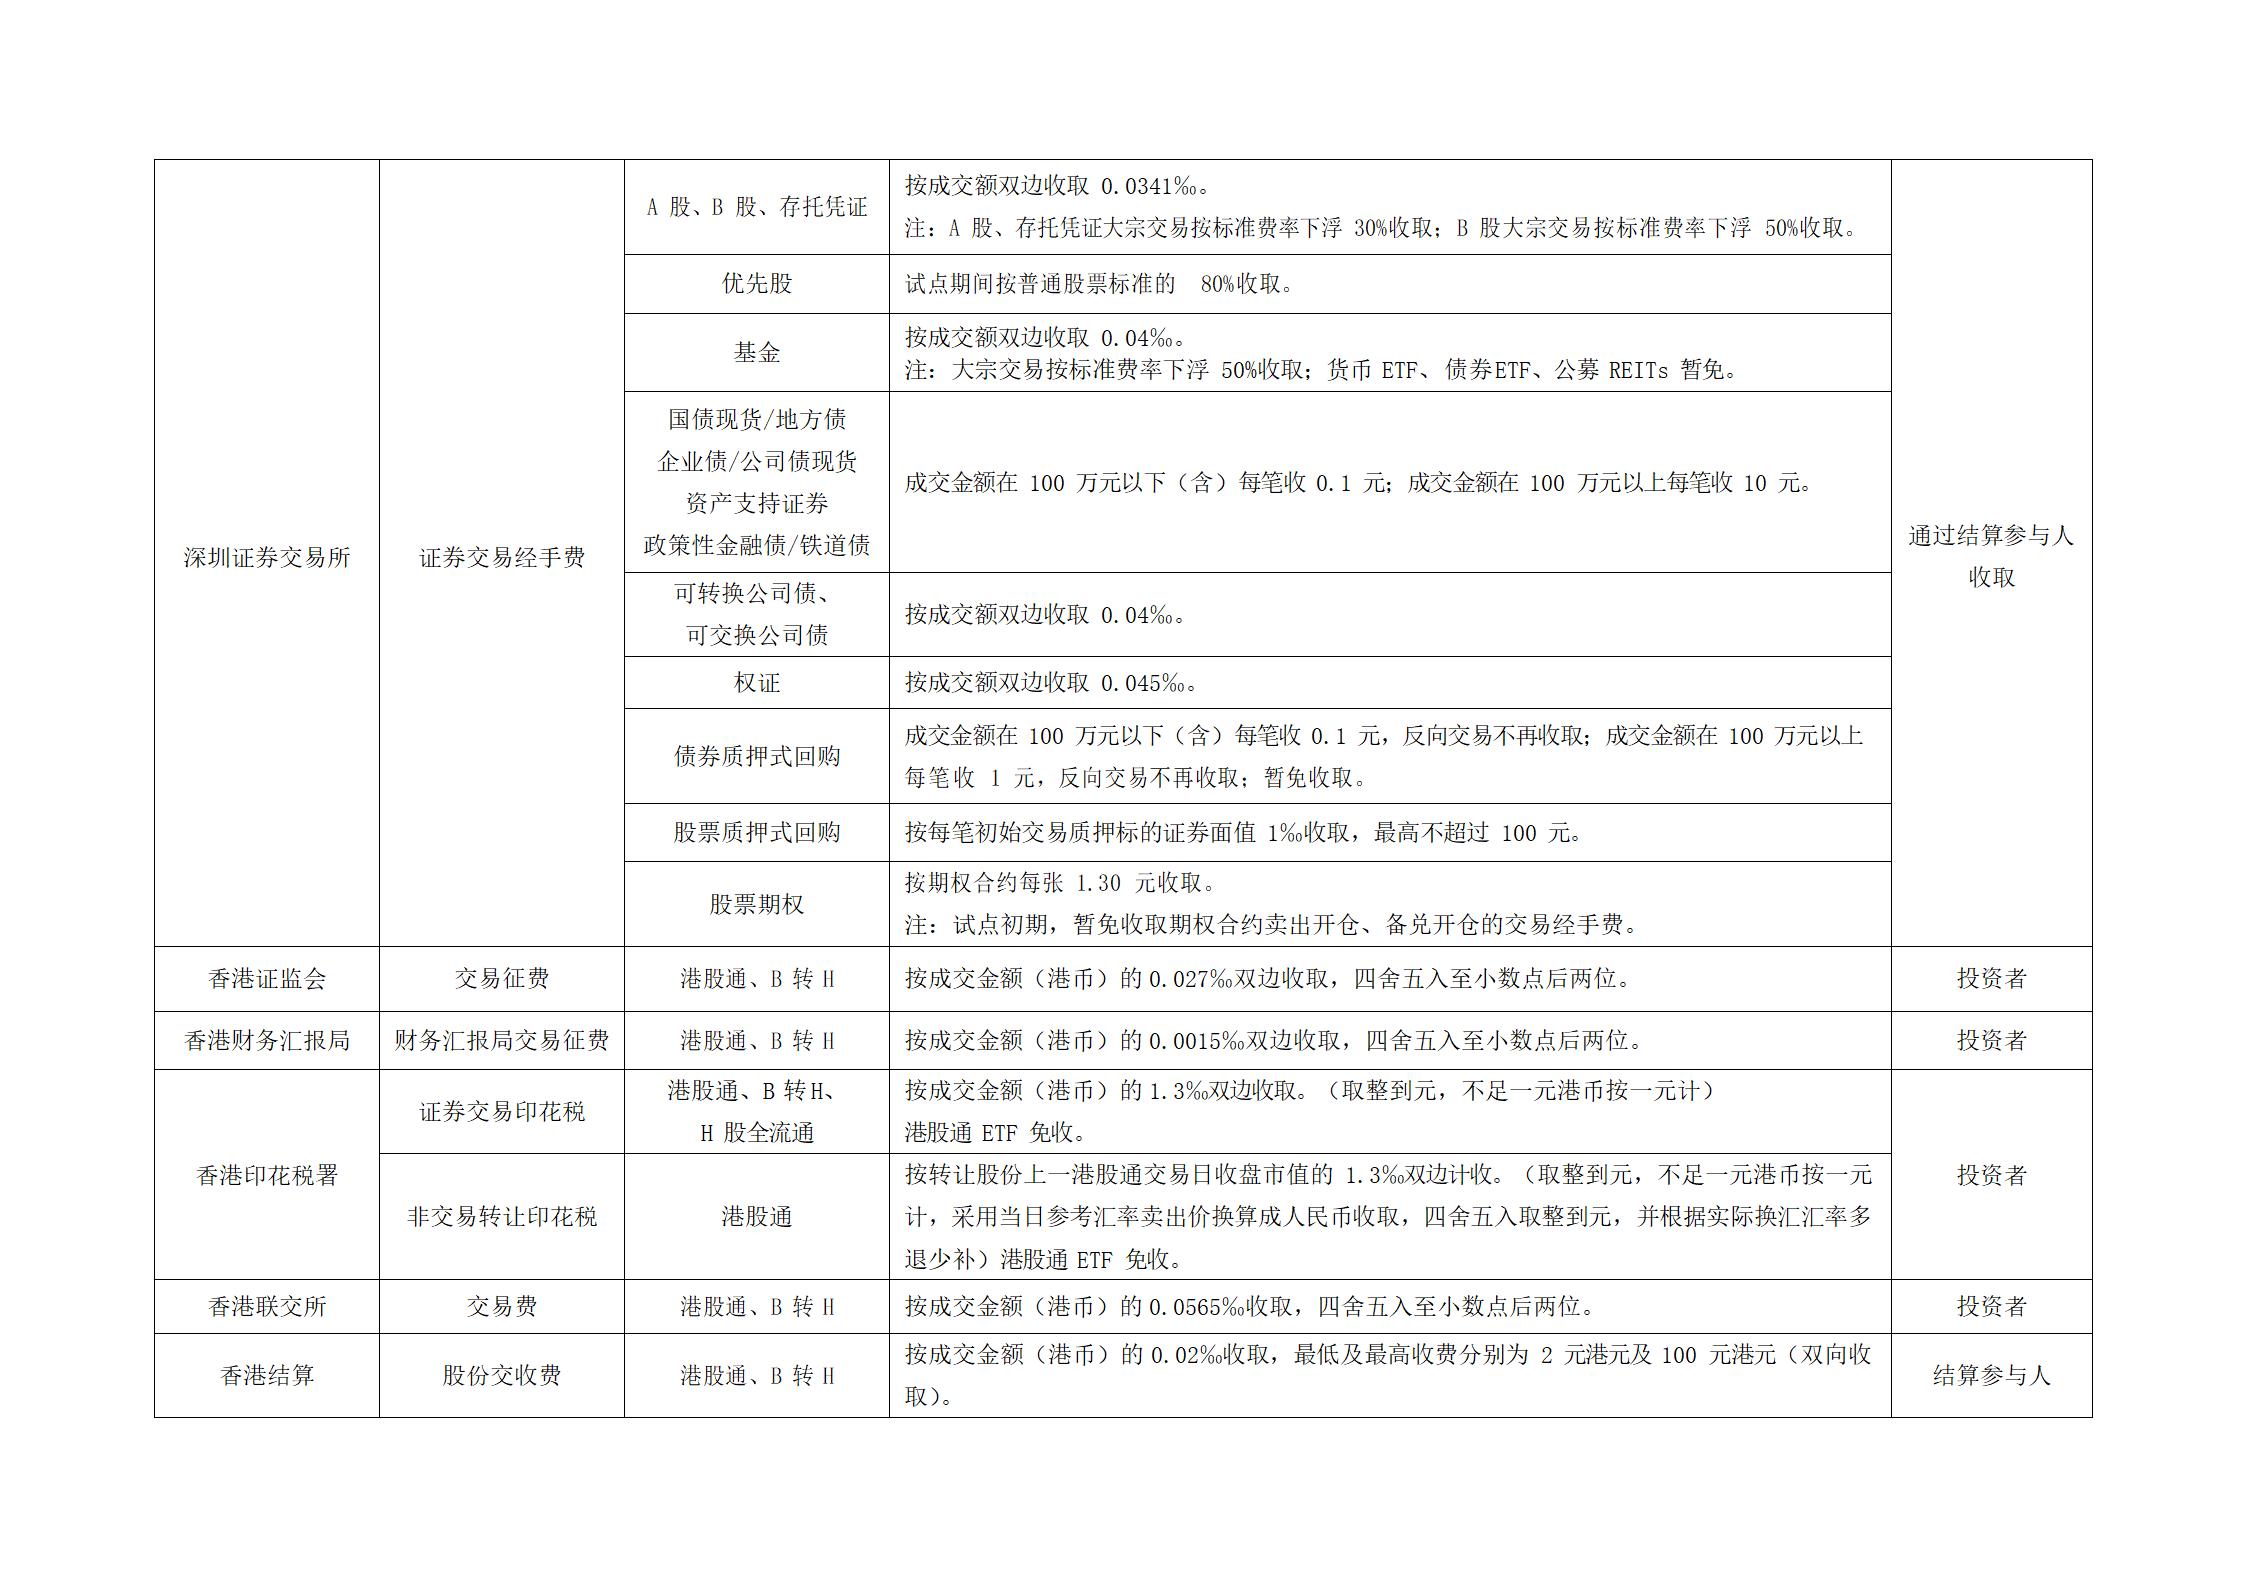 深圳市场证券登记结算业务收费及代收税费一览表 (1)_08.jpg